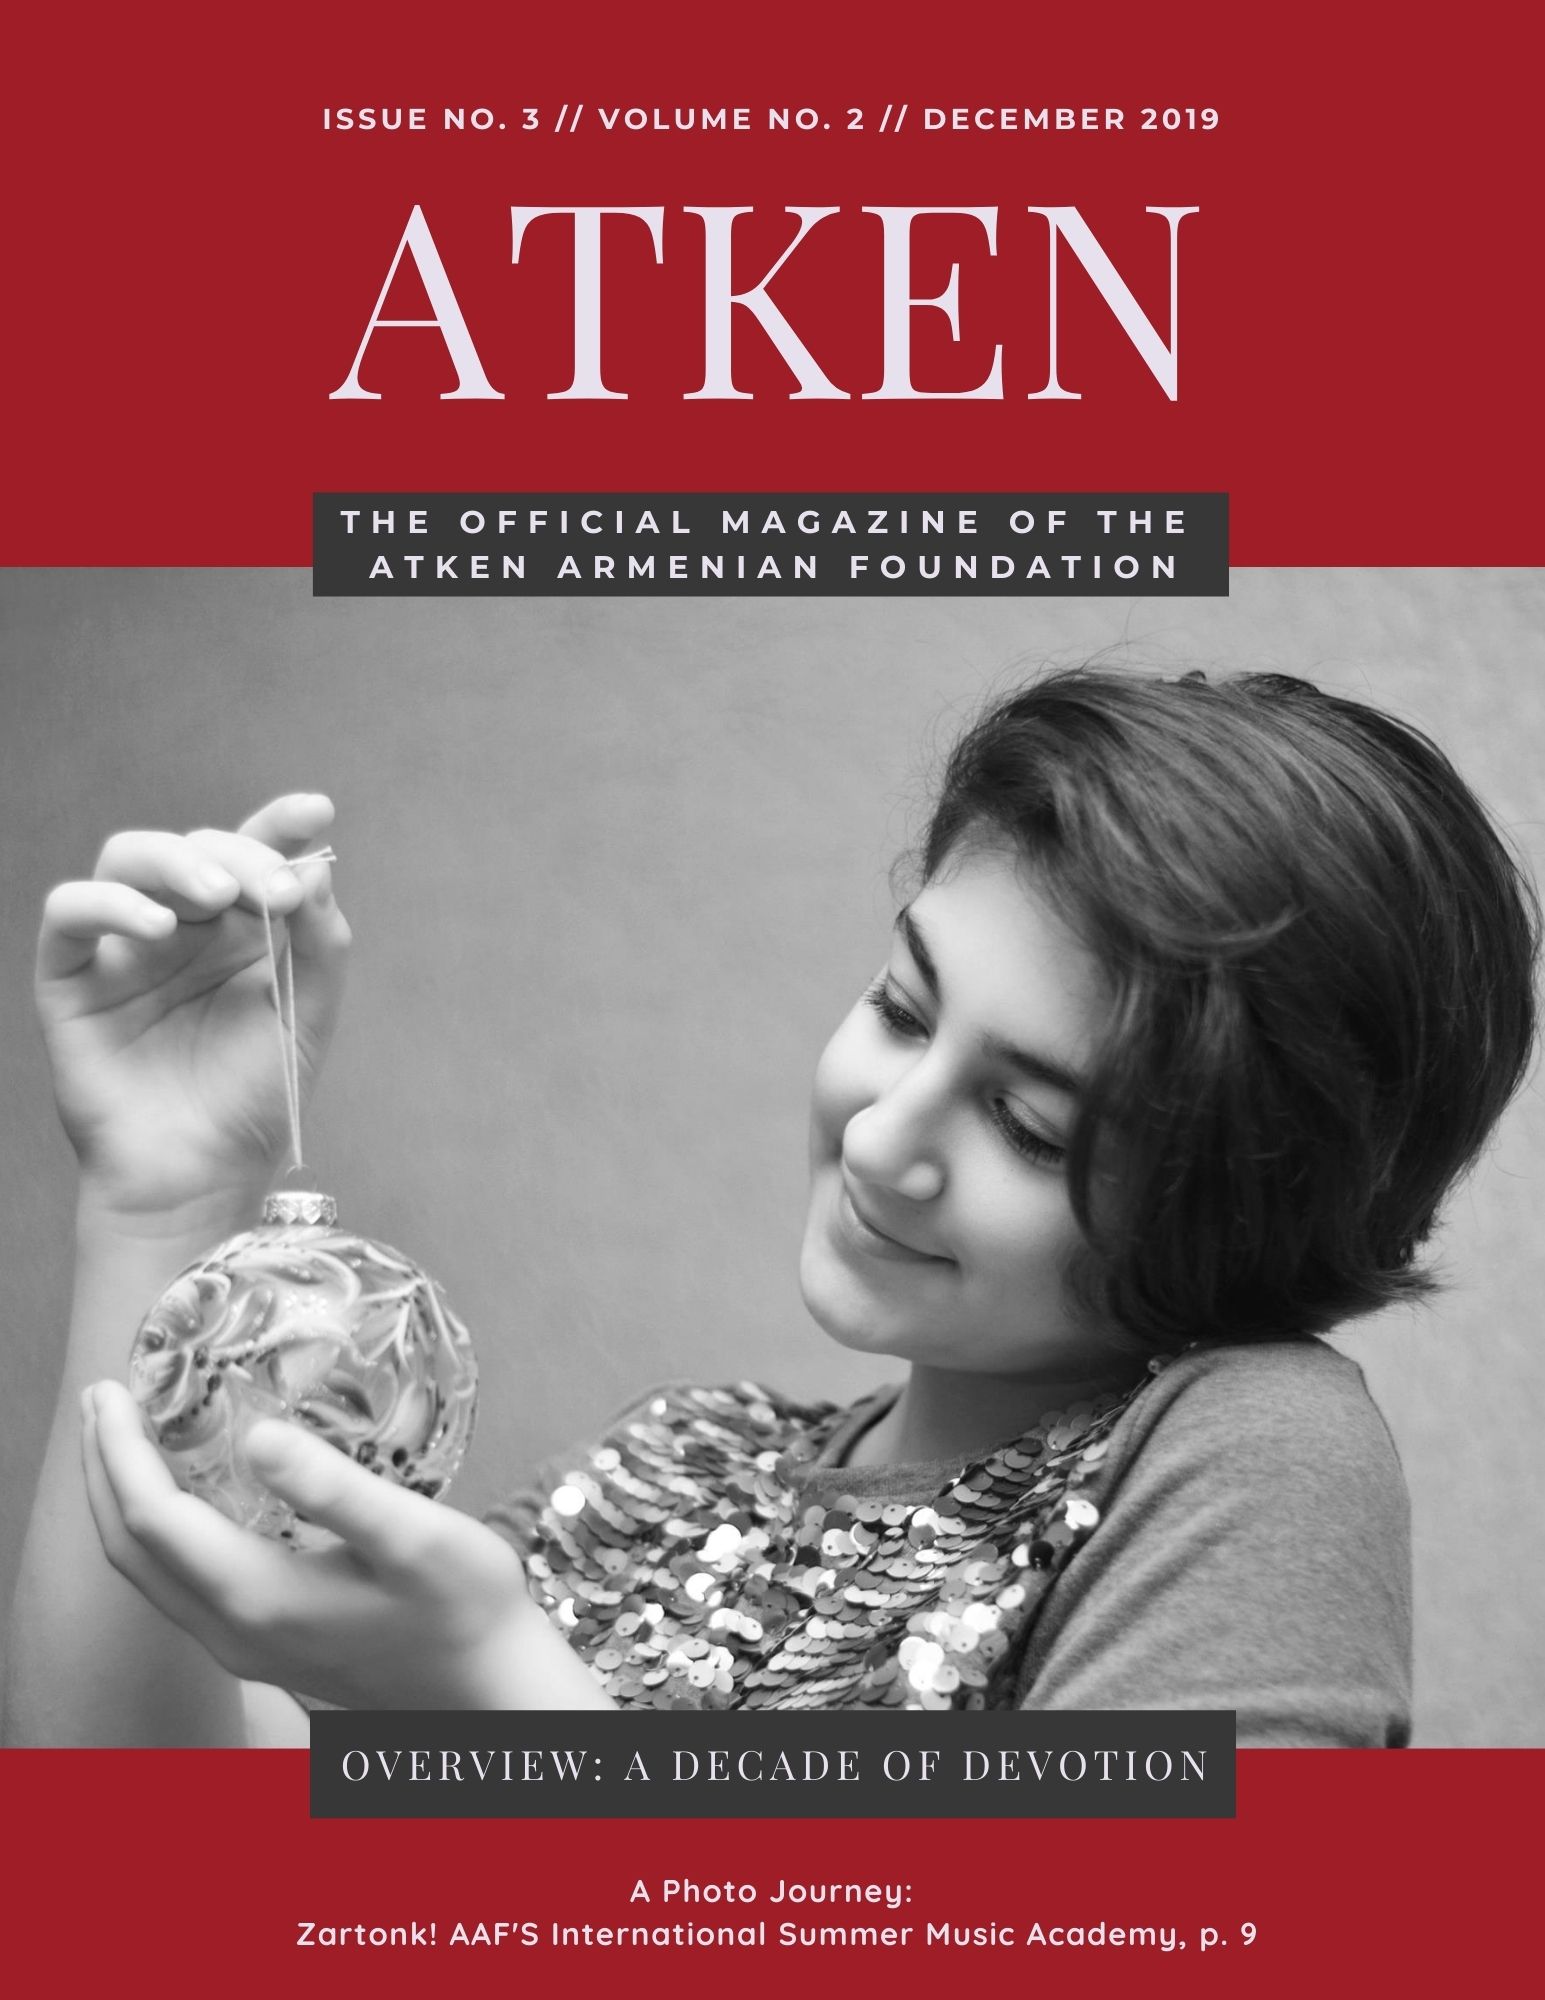 ATKEN Magazine published